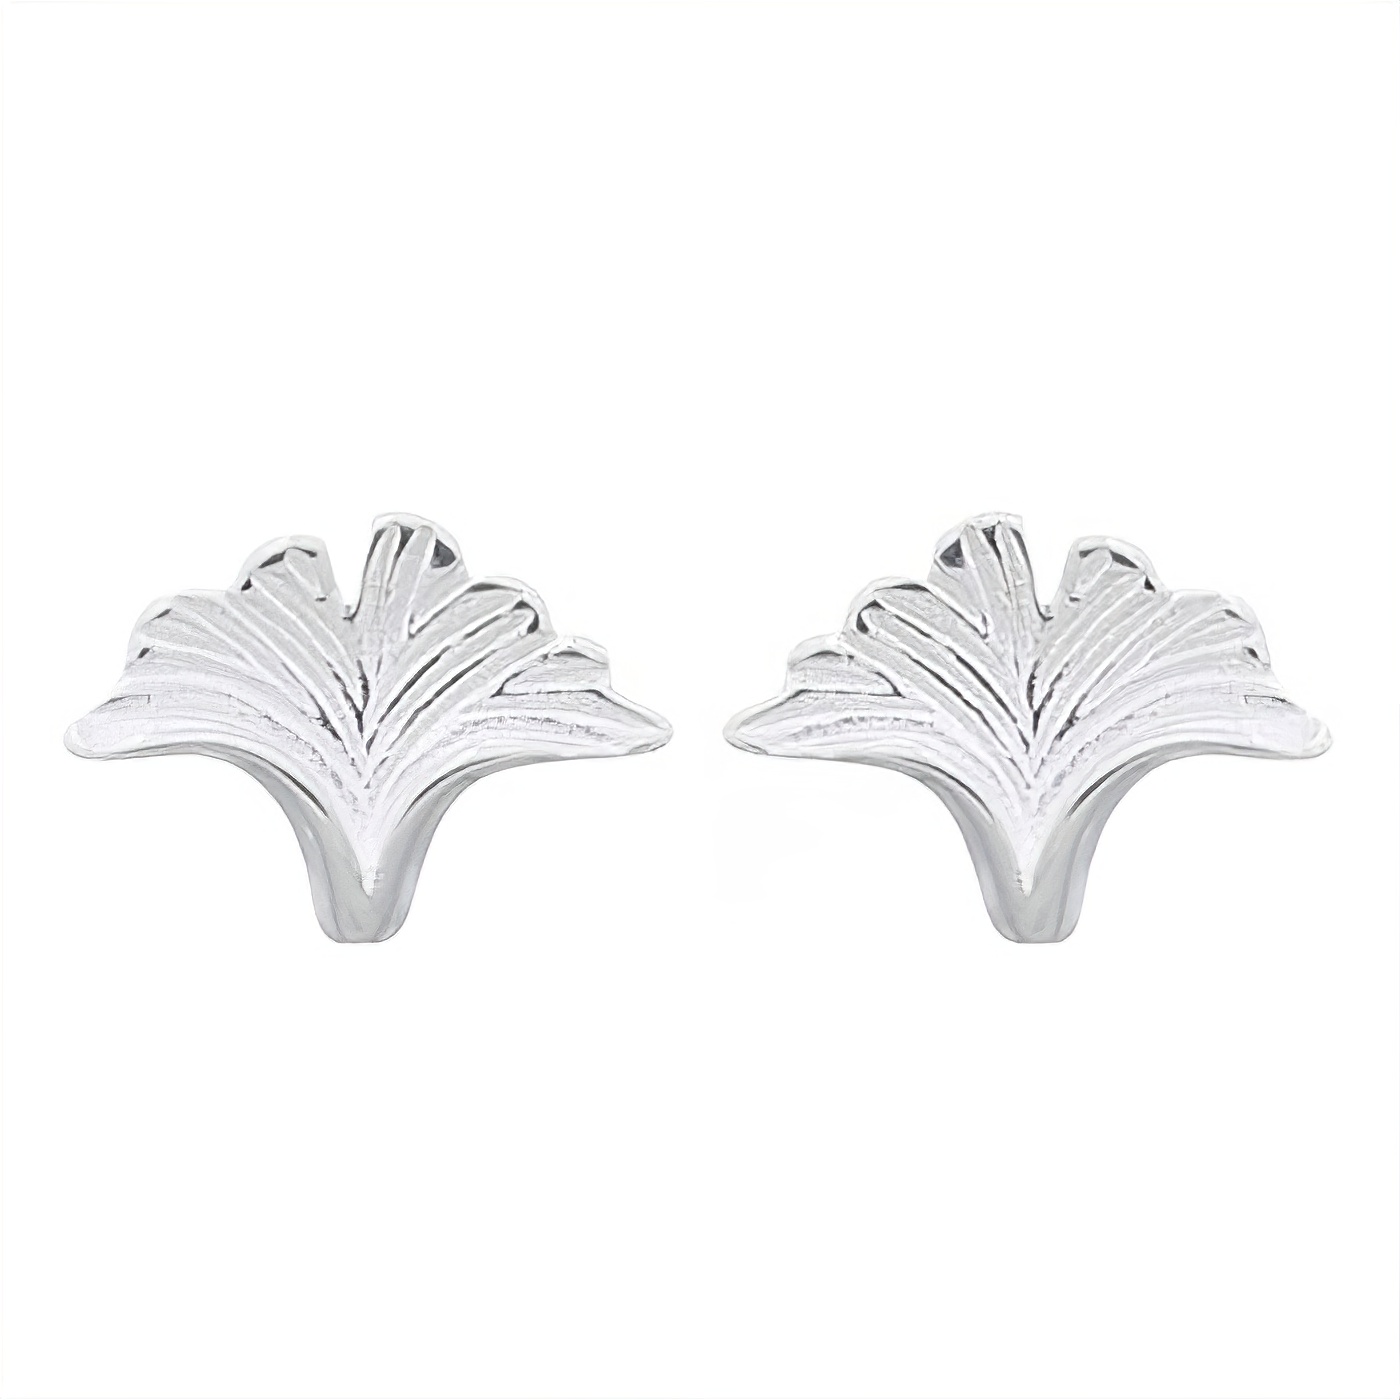 Ginkgo Silver Leaf 925 Stud Earrings by BeYindi 